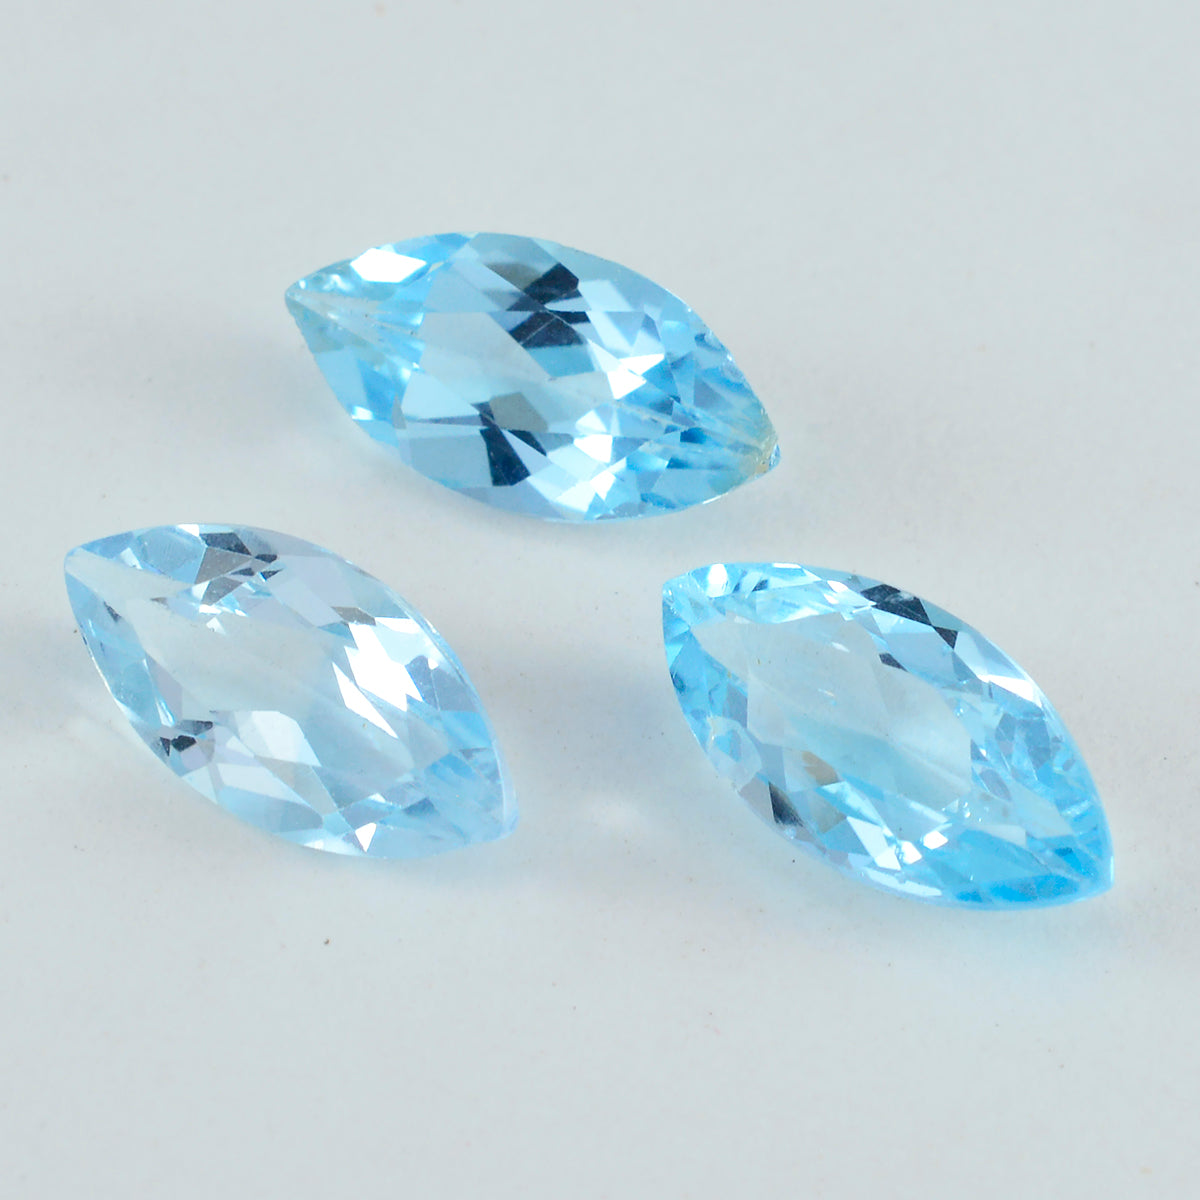 riyogems 1 шт. натуральный синий топаз ограненный 10x20 мм форма маркиза качество aa свободный драгоценный камень